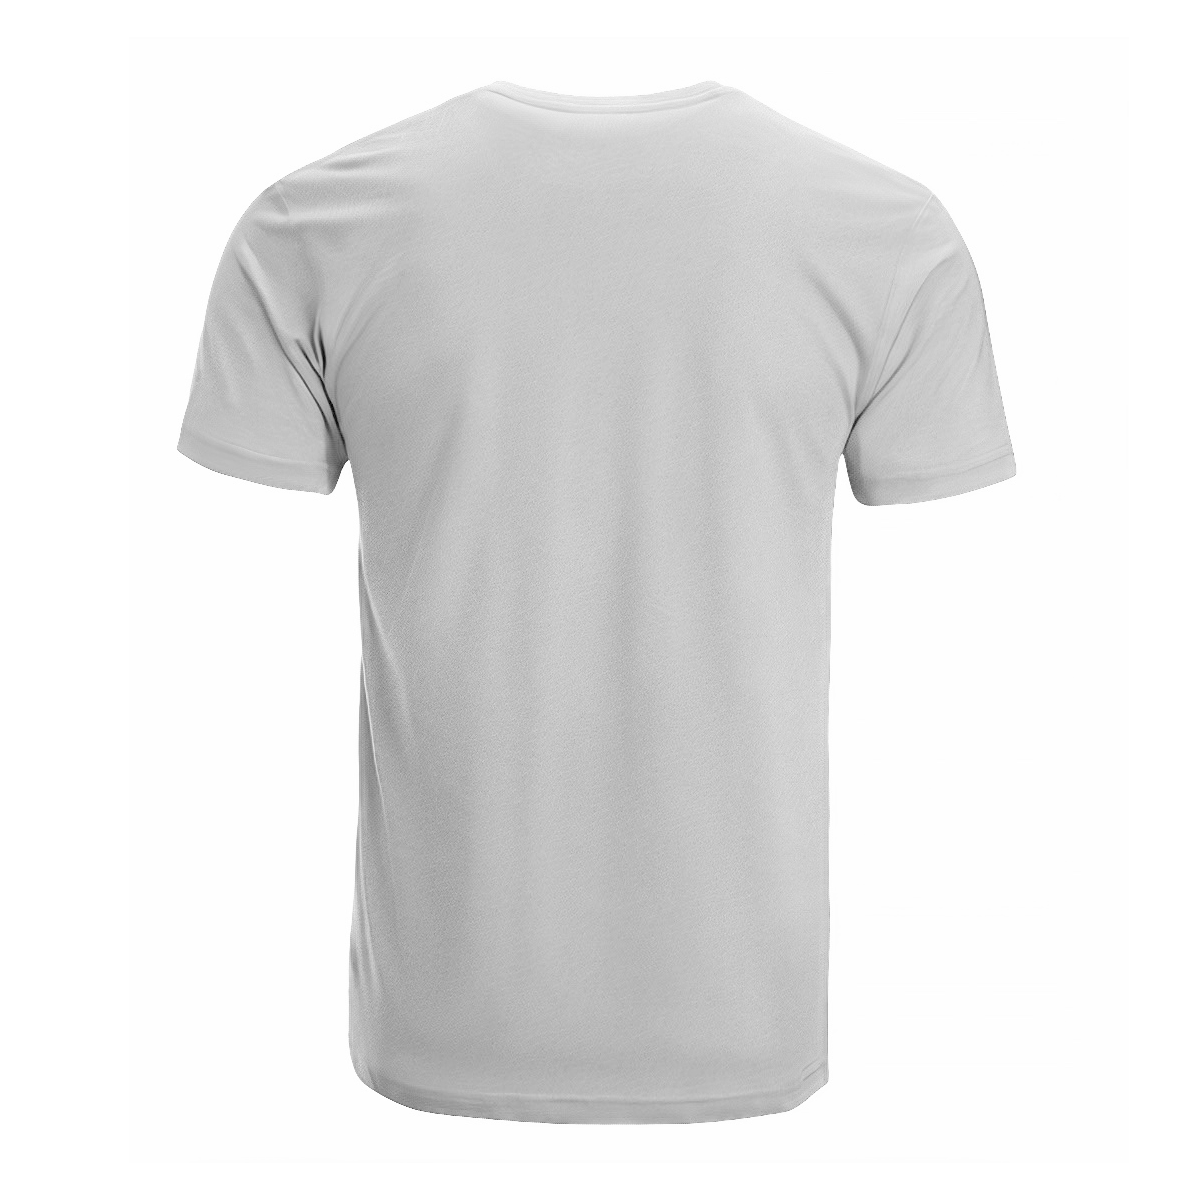 Udny Tartan Crest T-shirt - I'm not yelling style